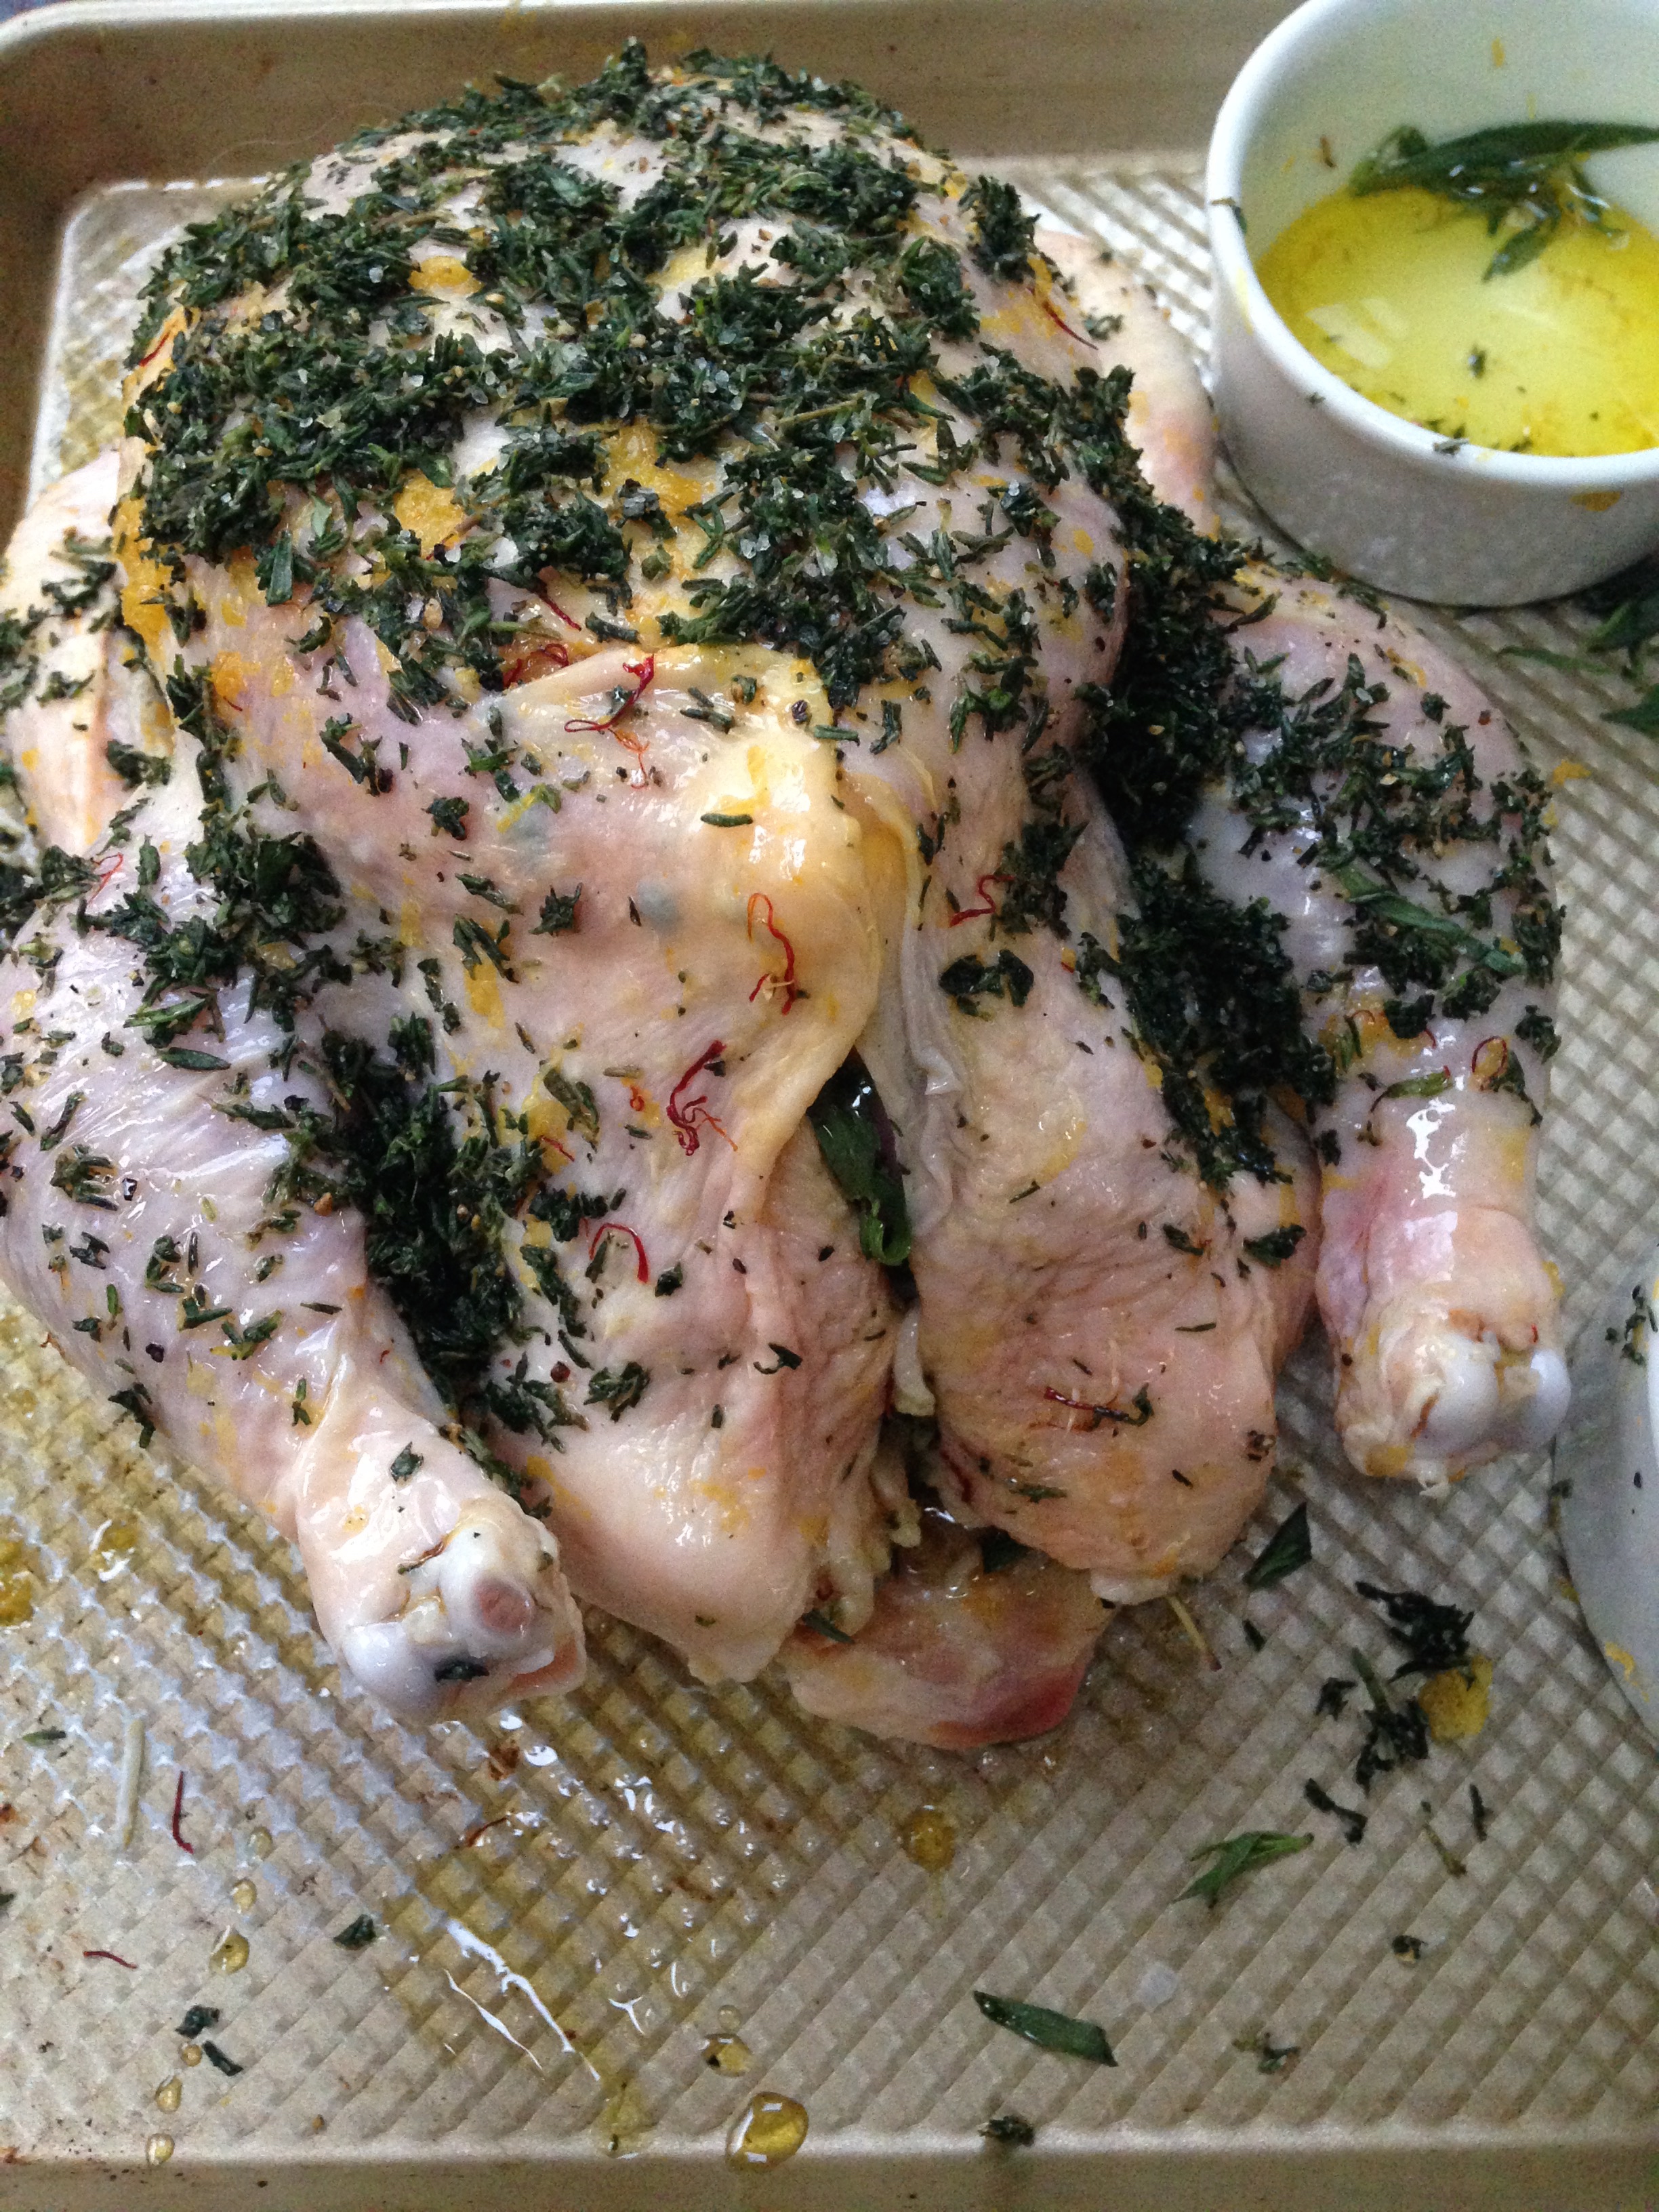 herb-rub-roast-chicken-tarragon-thyme